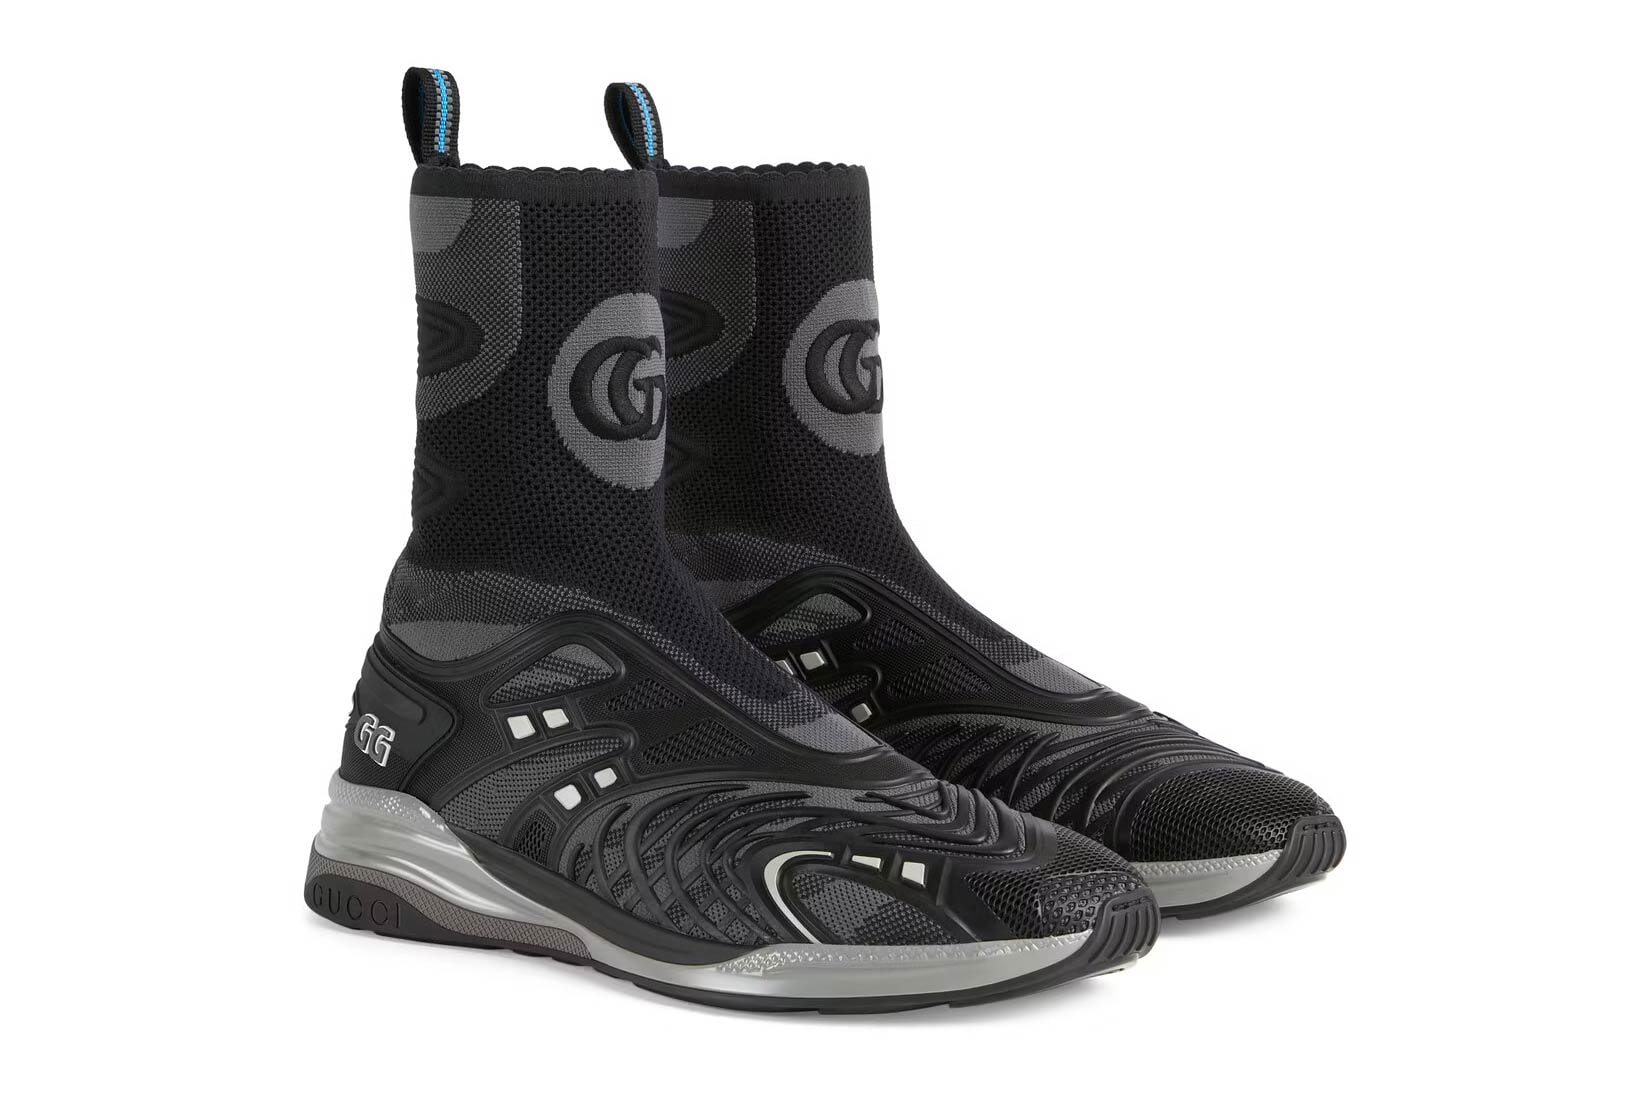 Gucci Ultrapace R mid-top sneaker neon black sneakers kicks footwear luxury Italian Style ‎655738 2TK10 8895  ‎660011 2TK10 8870 neon green